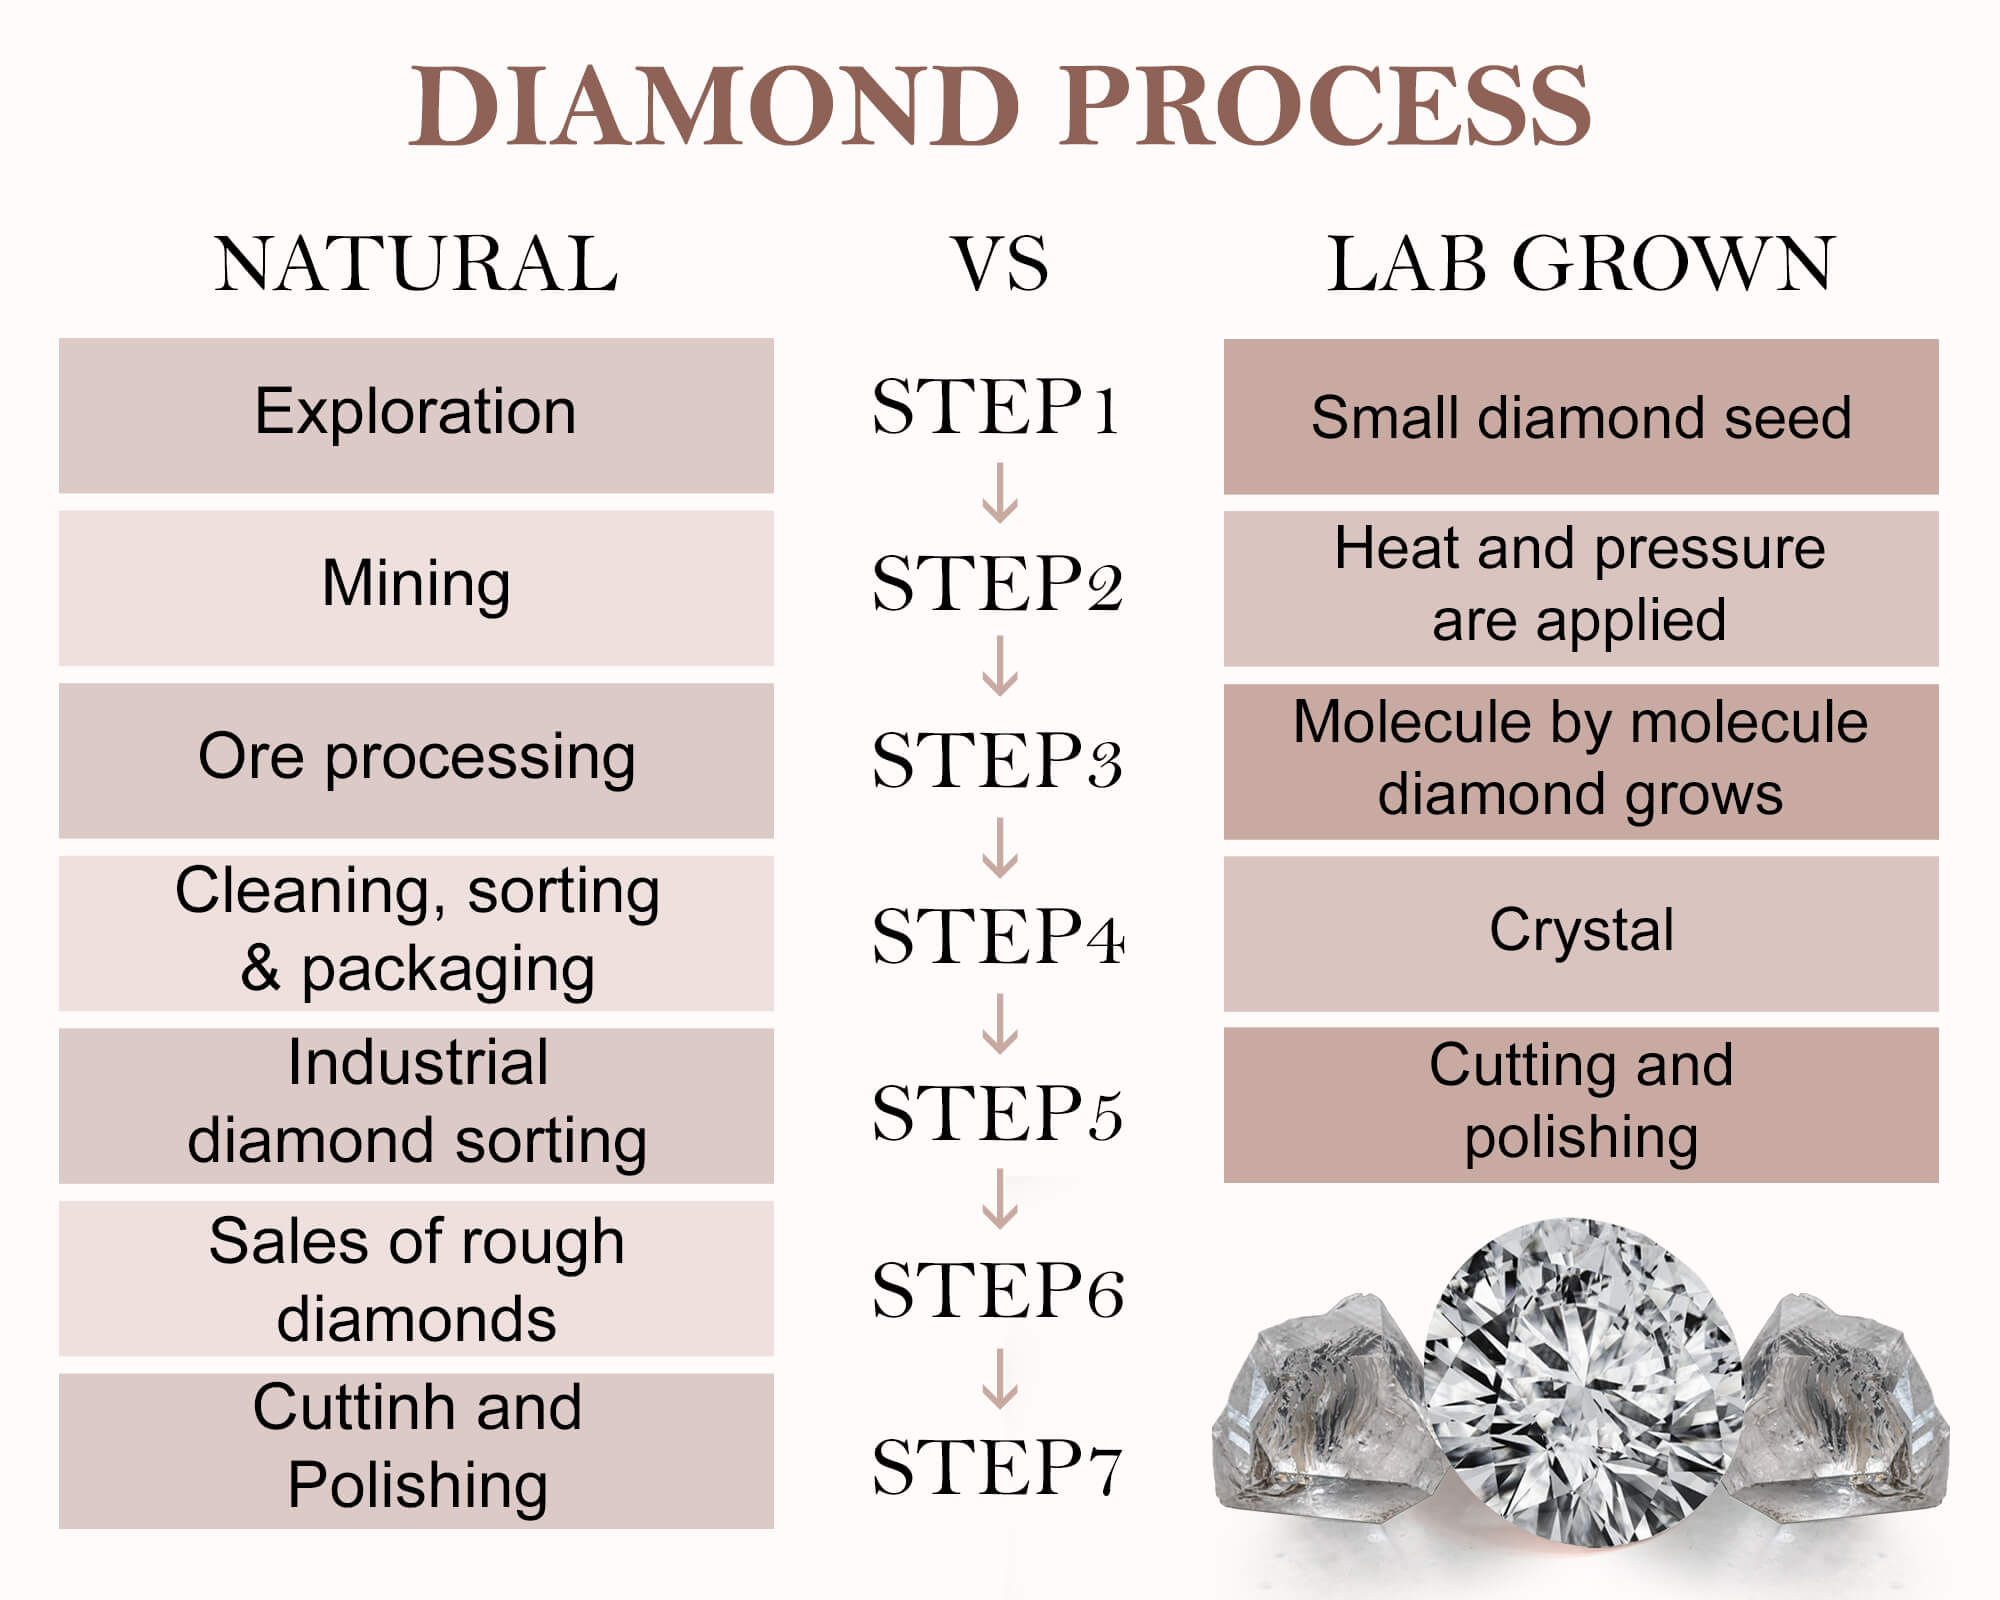 Lab-grown diamond vs. natural diamond